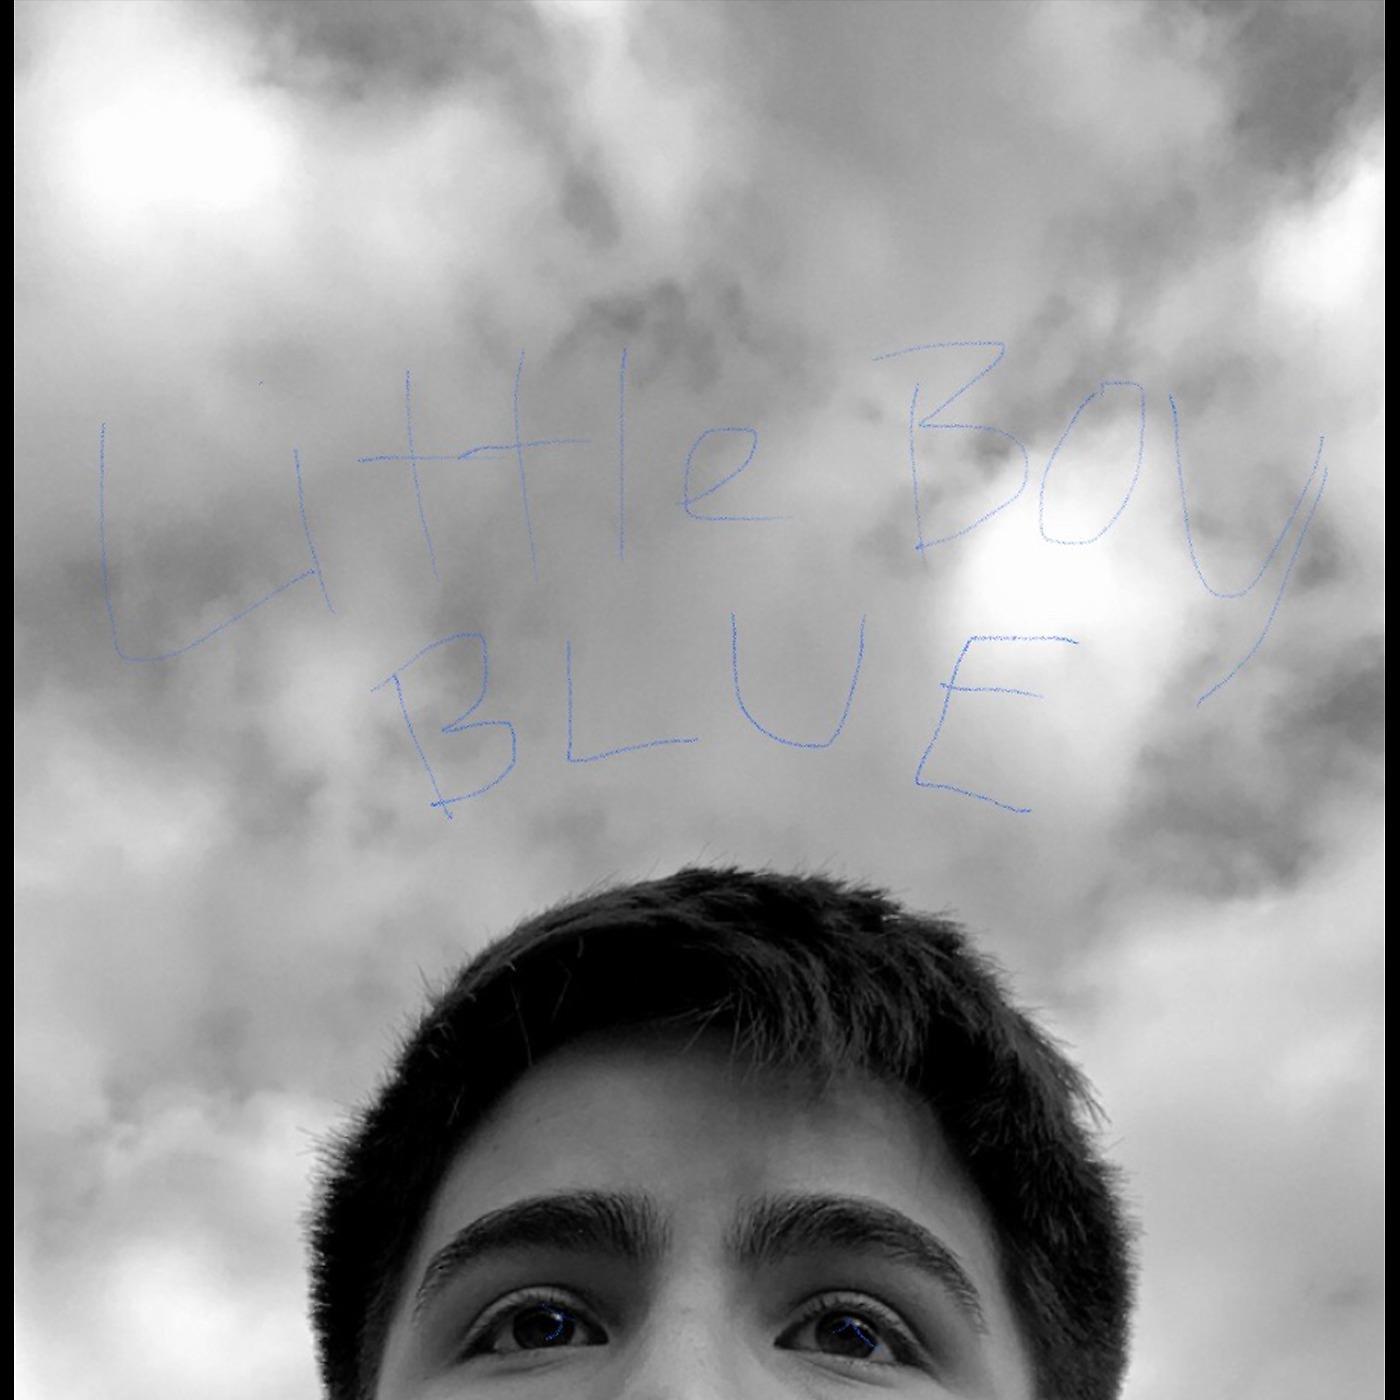 Постер альбома Little Boy Blue